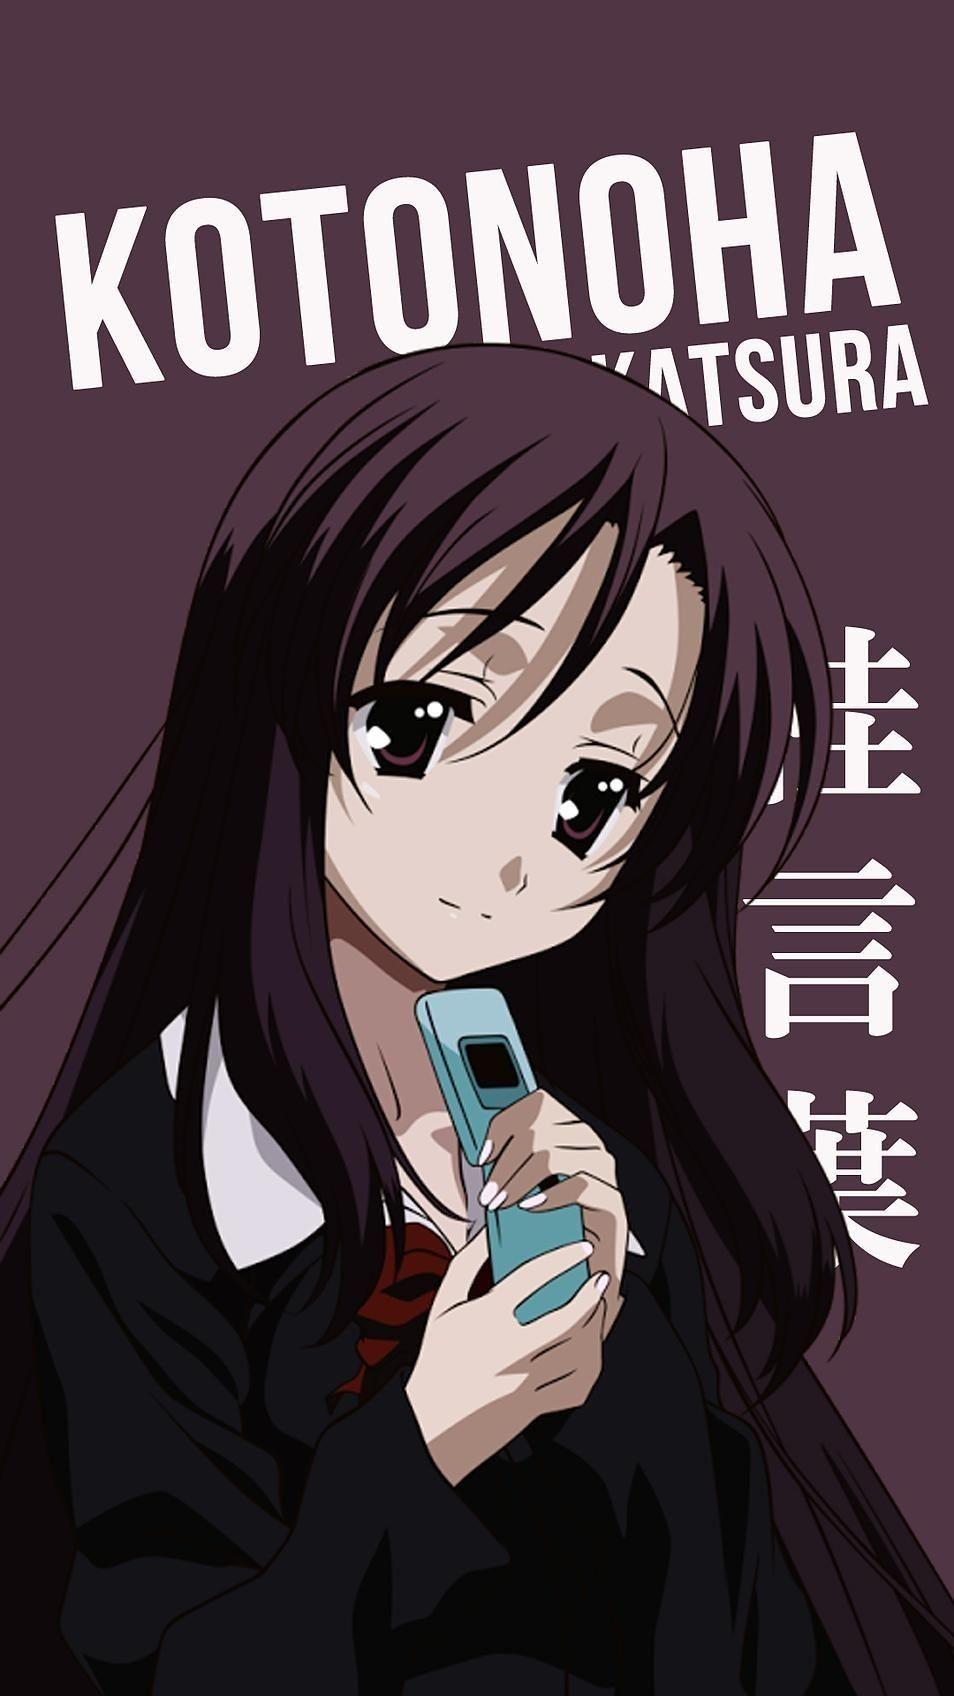 Katsura Kotaro/#471496 | Anime, Anime images, Katsura kotaro